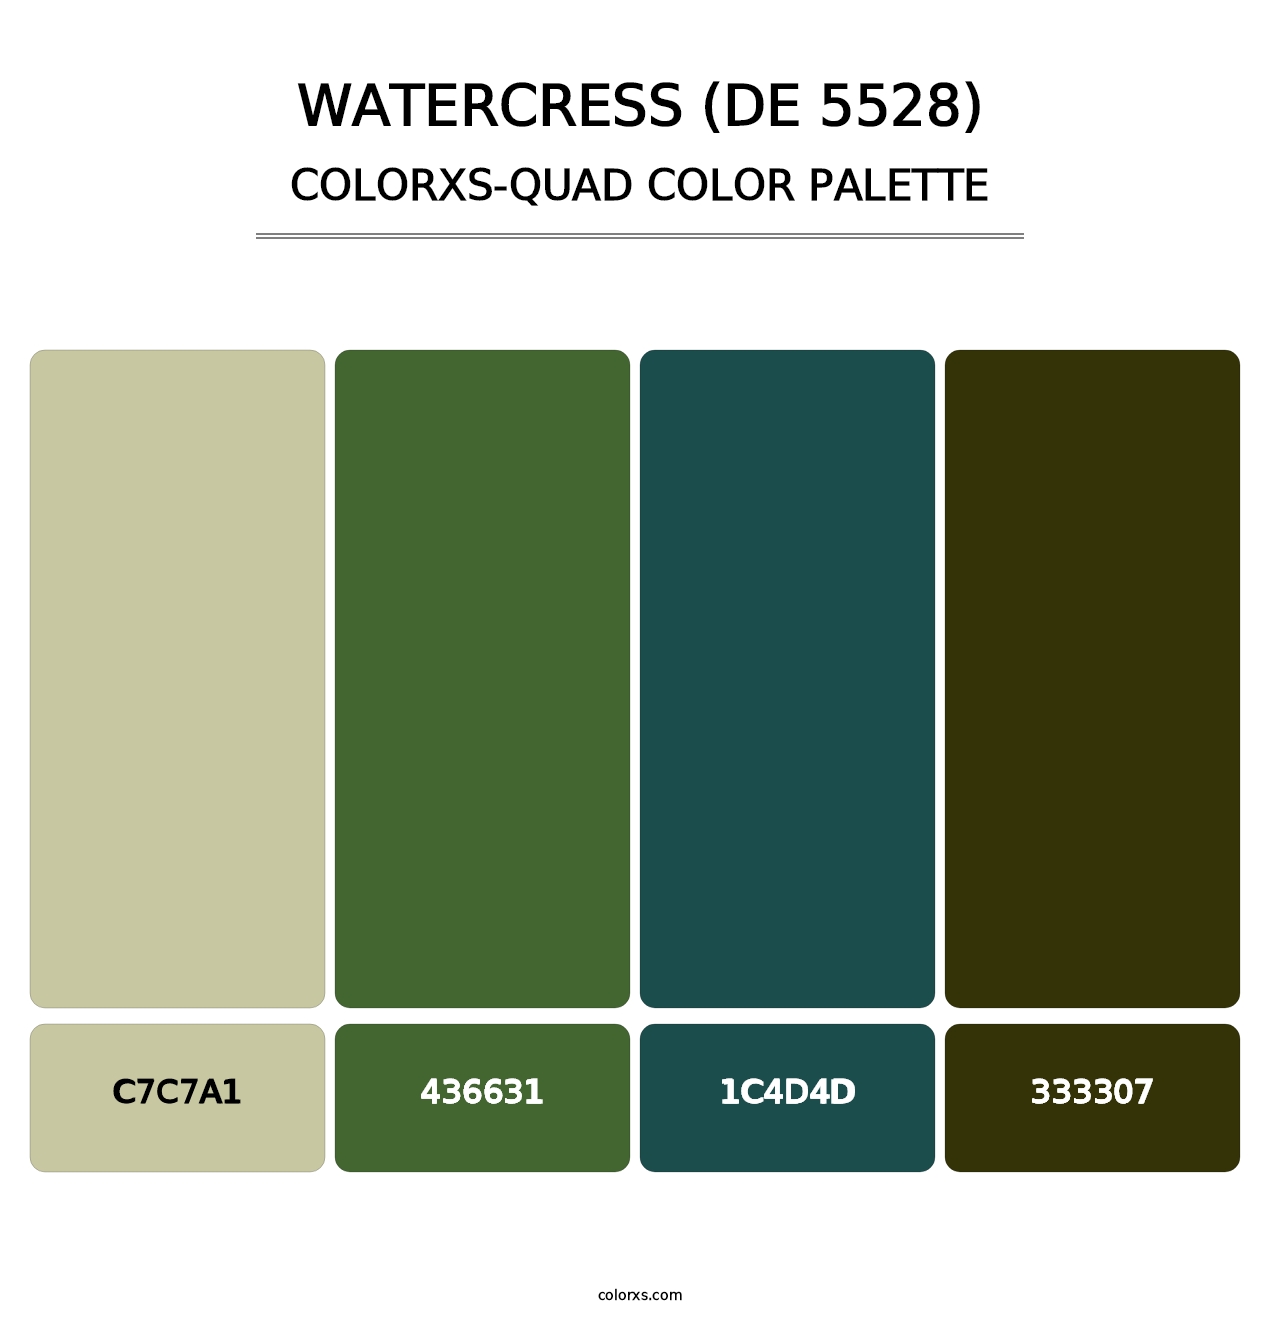 Watercress (DE 5528) - Colorxs Quad Palette